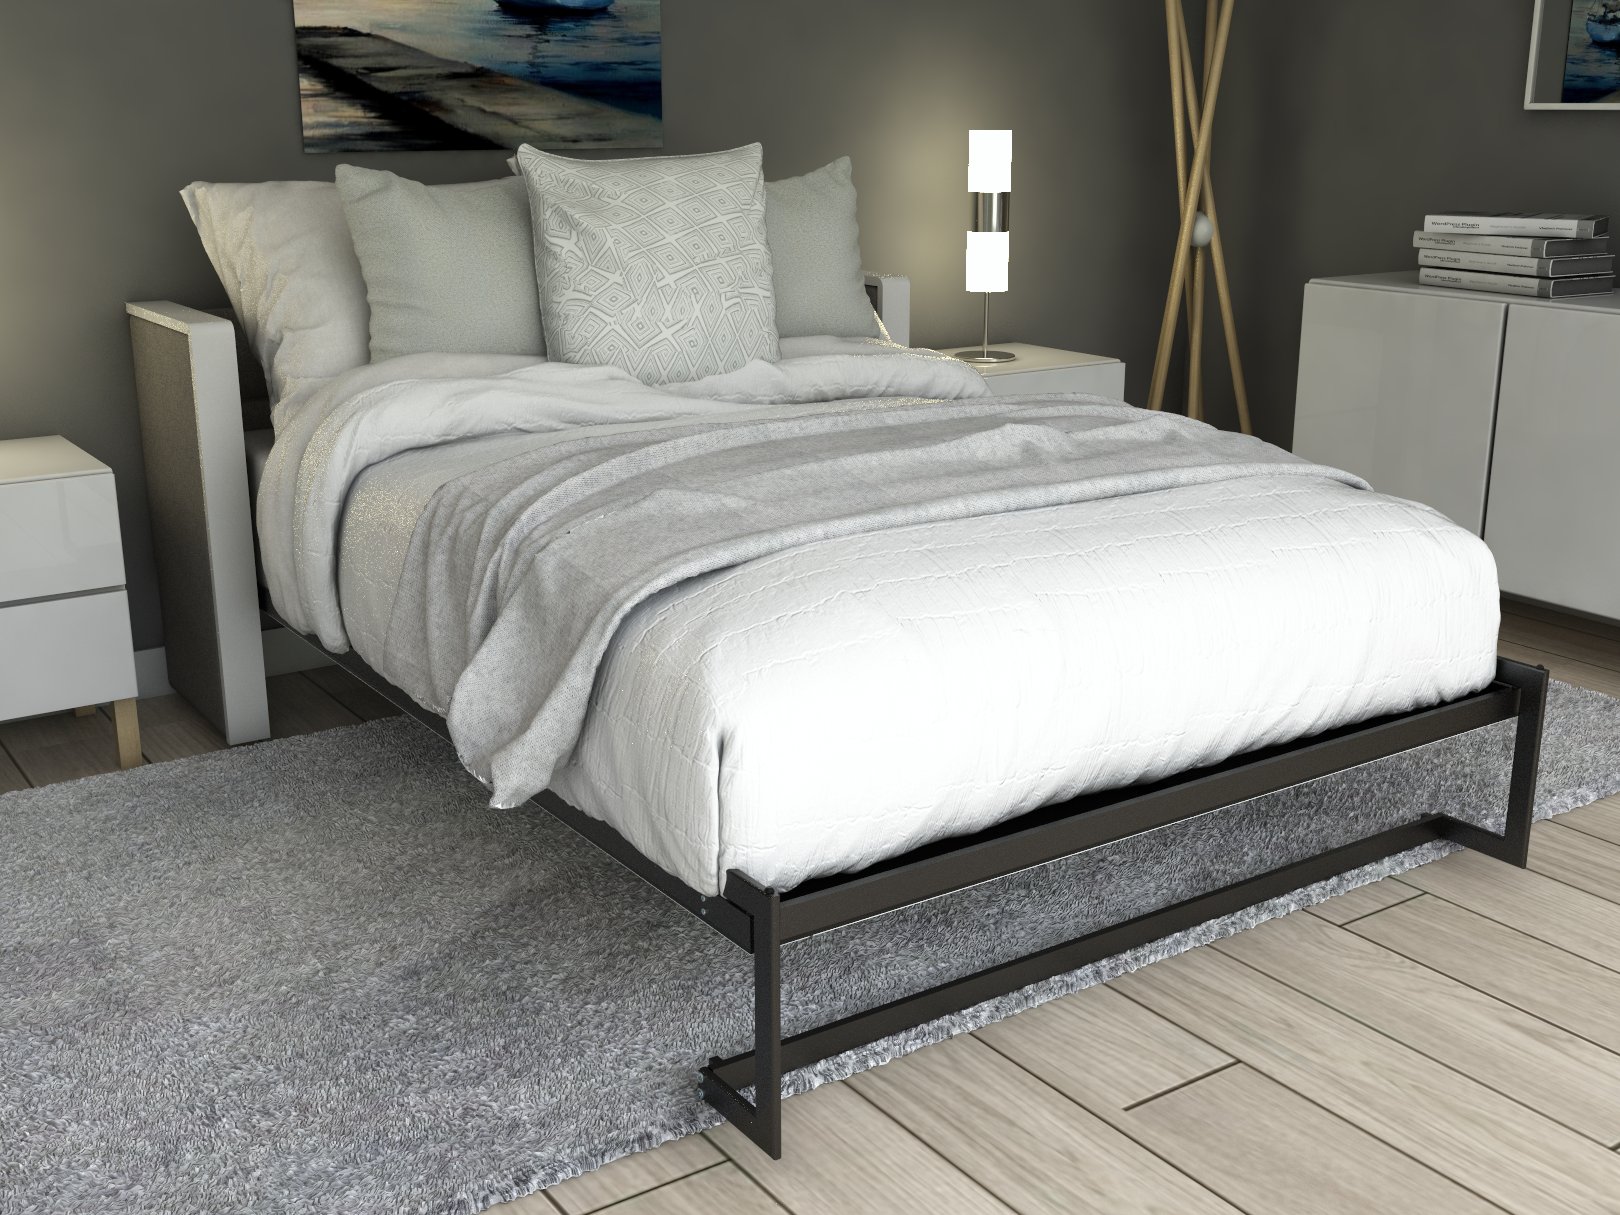 Esentelle base de cama matrimonial con laminado de madera color fresno // MS